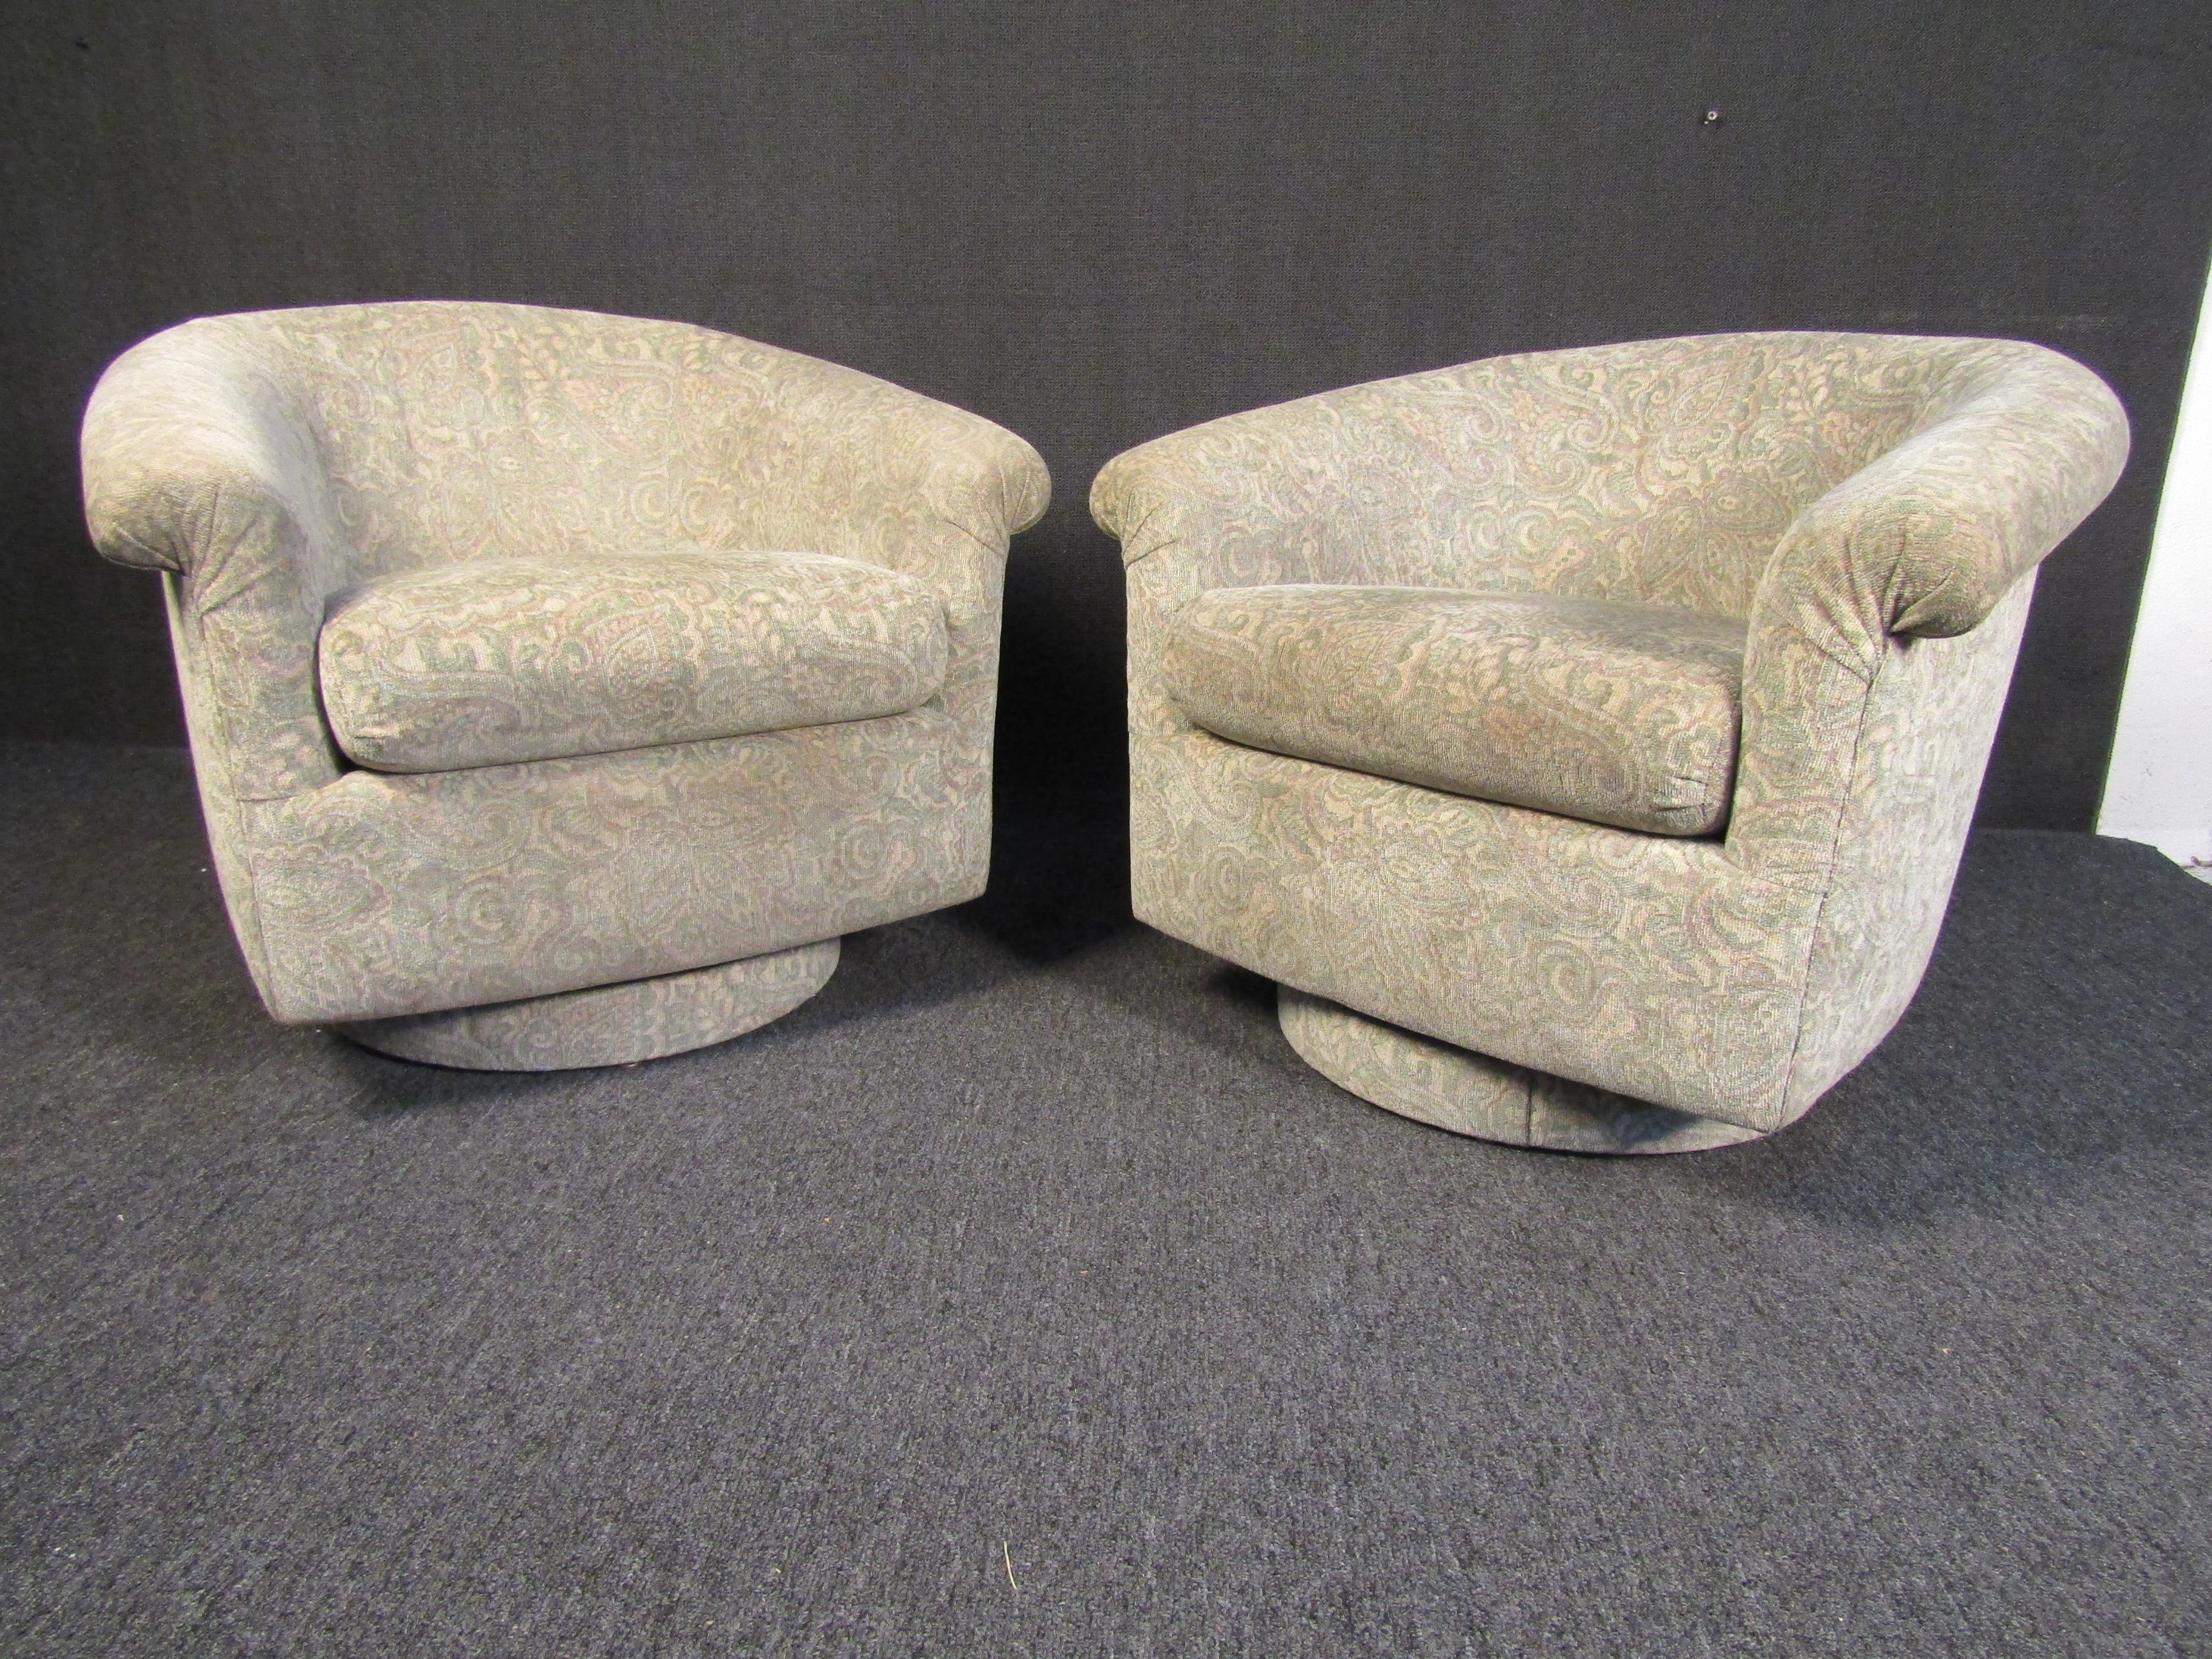 Paire de fauteuils élégants de style Mid-Century Modern, tapissés d'un joli tissu beige et rembourrés pour une assise confortable. Cette paire de chaises vintage est parfaite pour un salon, un bureau ou tout coin de lecture tranquille. Veuillez